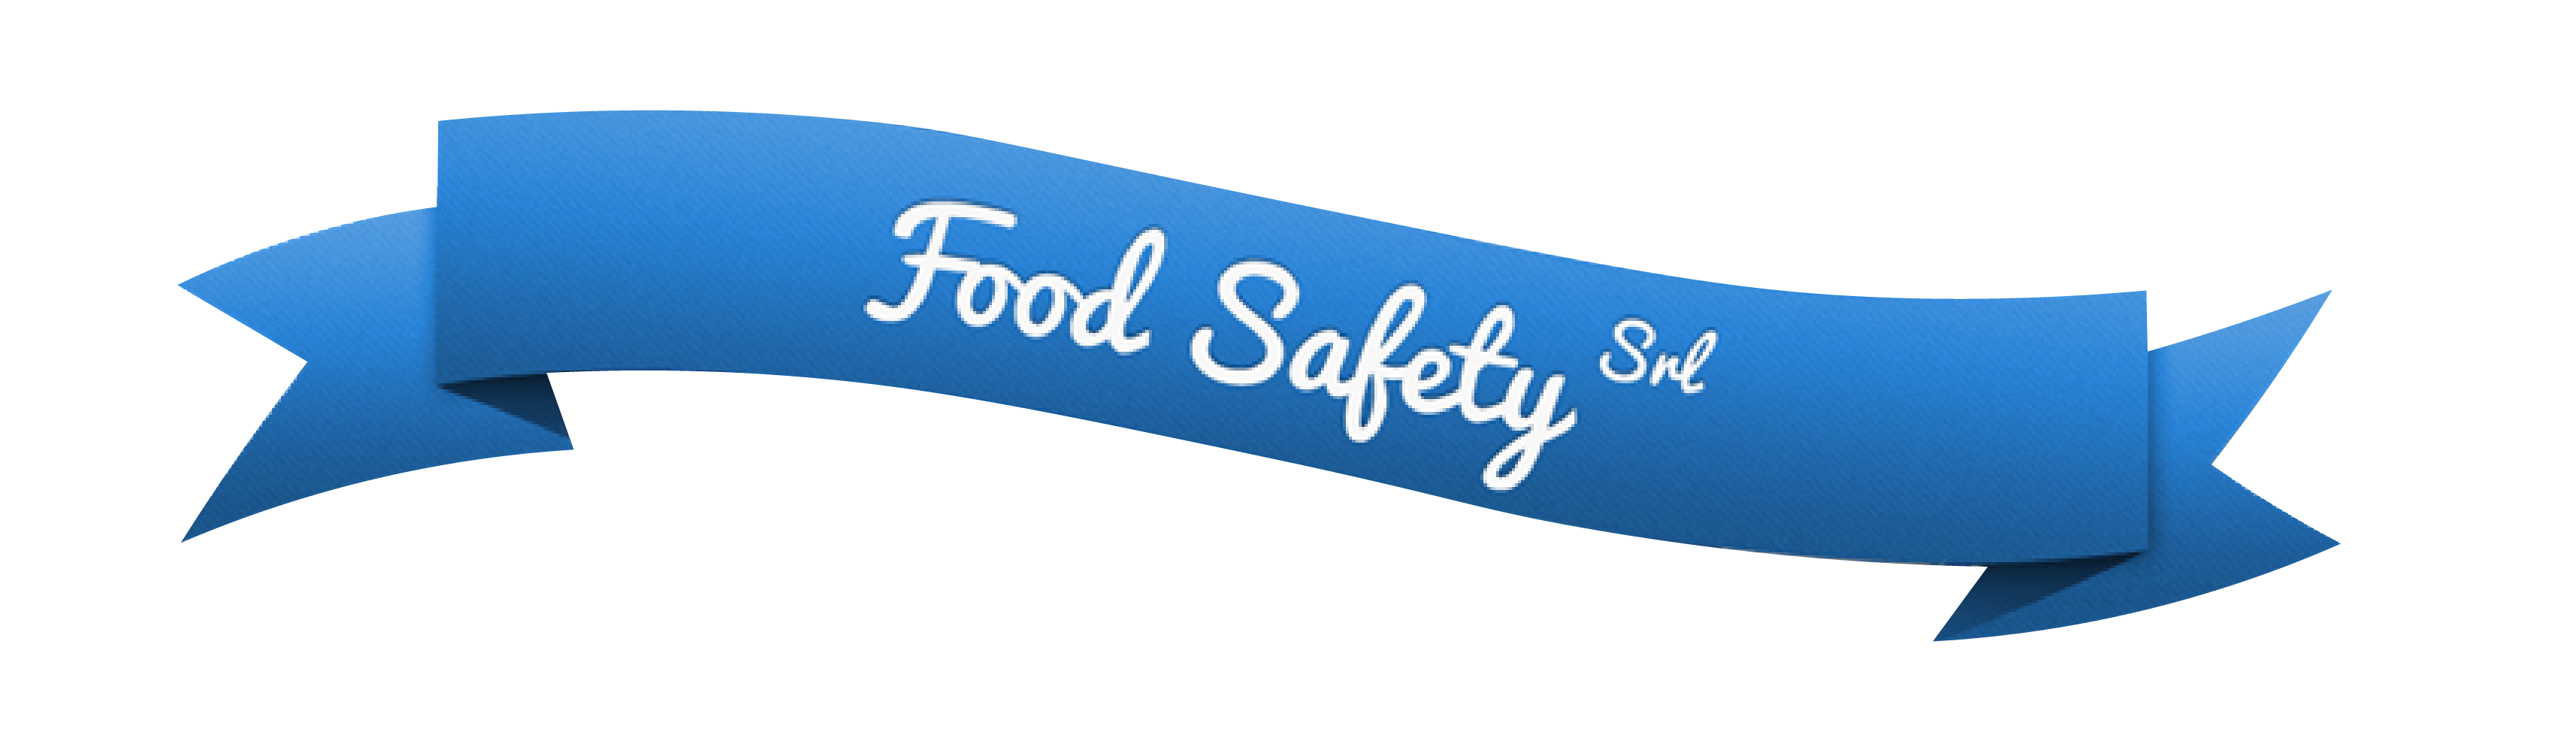 Food Safety SRL